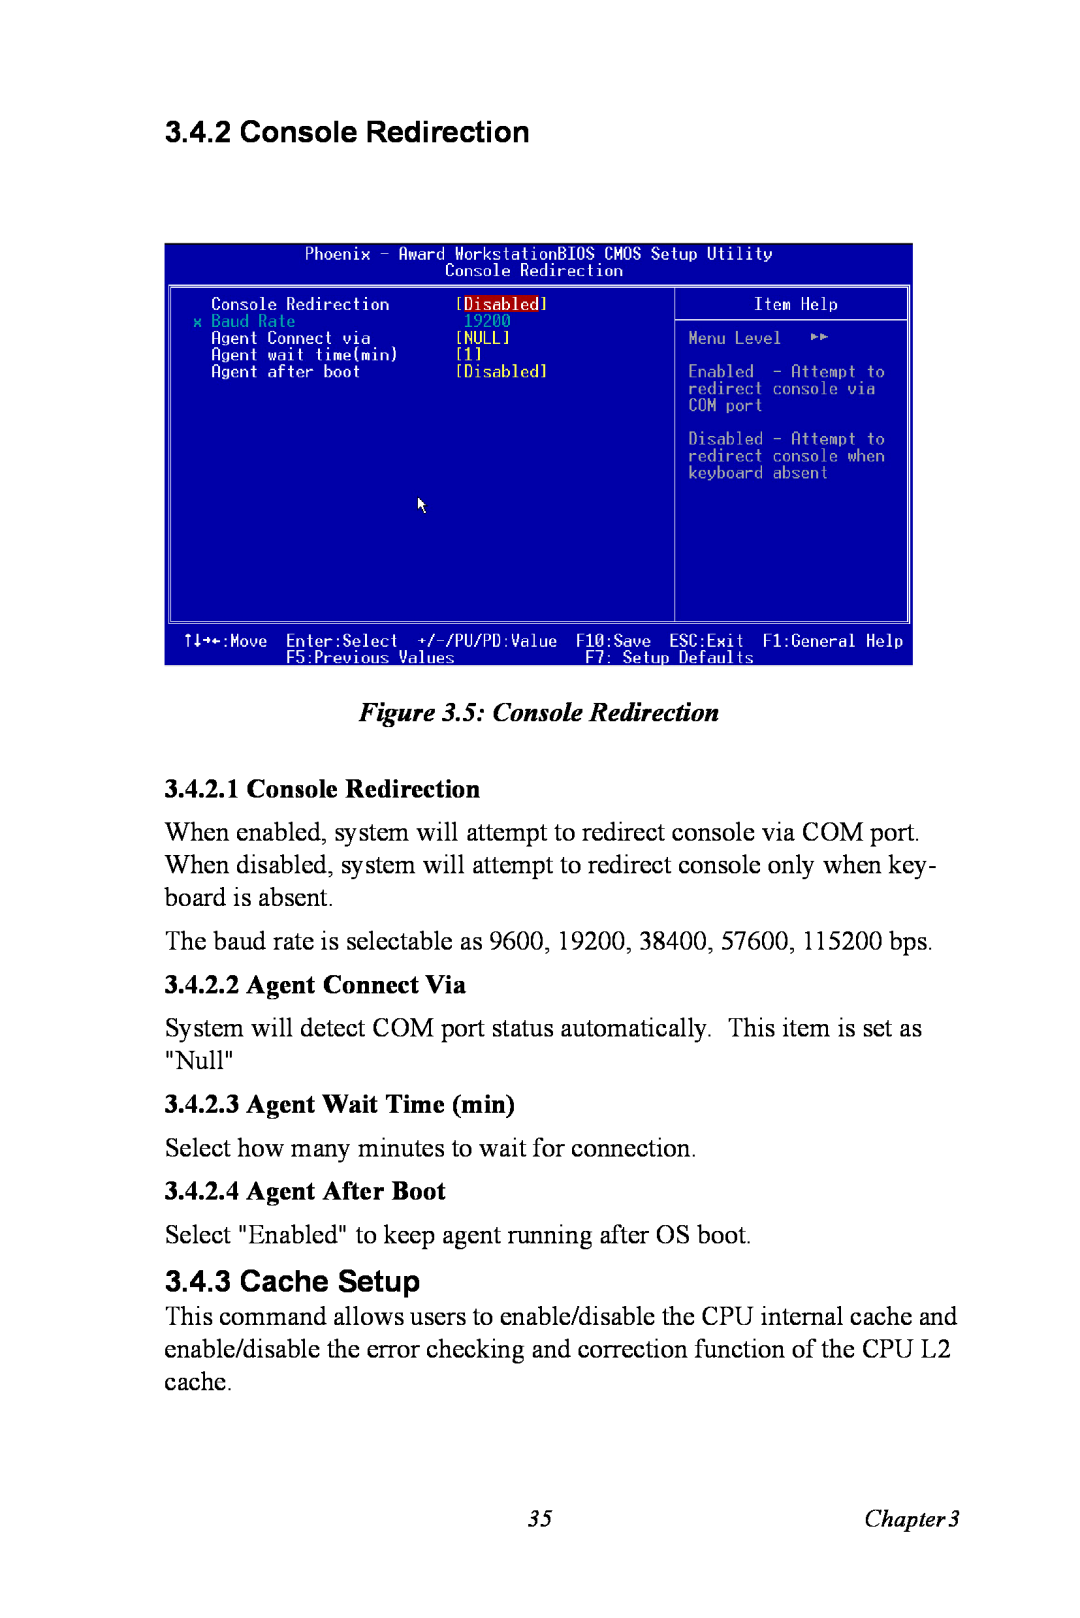 Advantech PCA-6185 Cache Setup, 5 Console Redirection, Agent Connect Via, Agent Wait Time min, Agent After Boot 